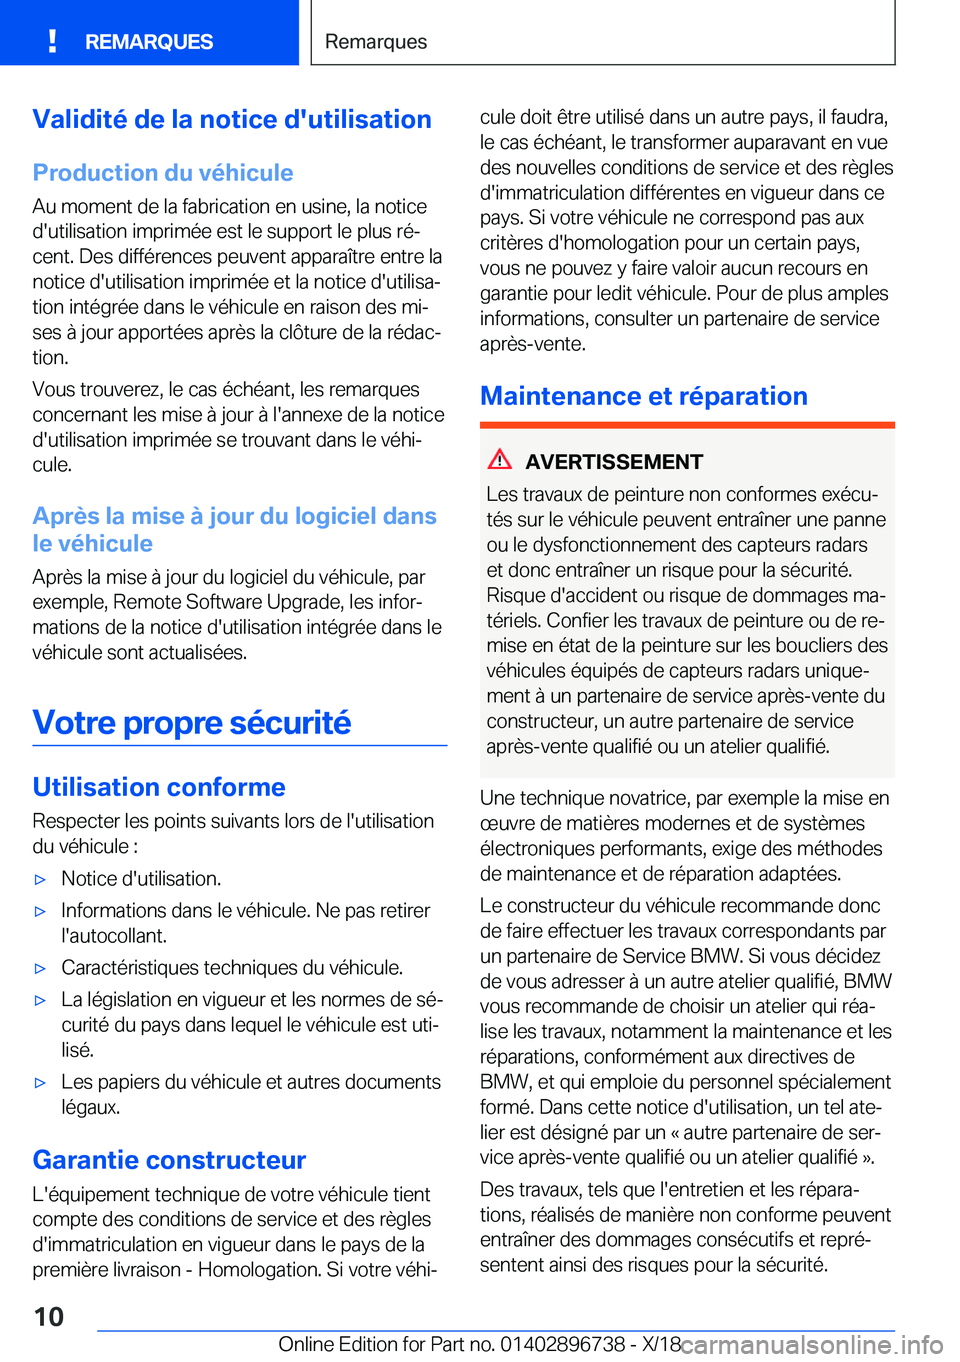 BMW X5 2019  Notices Demploi (in French) �V�a�l�i�d�i�t�é��d�e��l�a��n�o�t�i�c�e��d�'�u�t�i�l�i�s�a�t�i�o�n
�P�r�o�d�u�c�t�i�o�n��d�u��v�é�h�i�c�u�l�e
�A�u��m�o�m�e�n�t��d�e��l�a��f�a�b�r�i�c�a�t�i�o�n��e�n��u�s�i�n�e�,��l